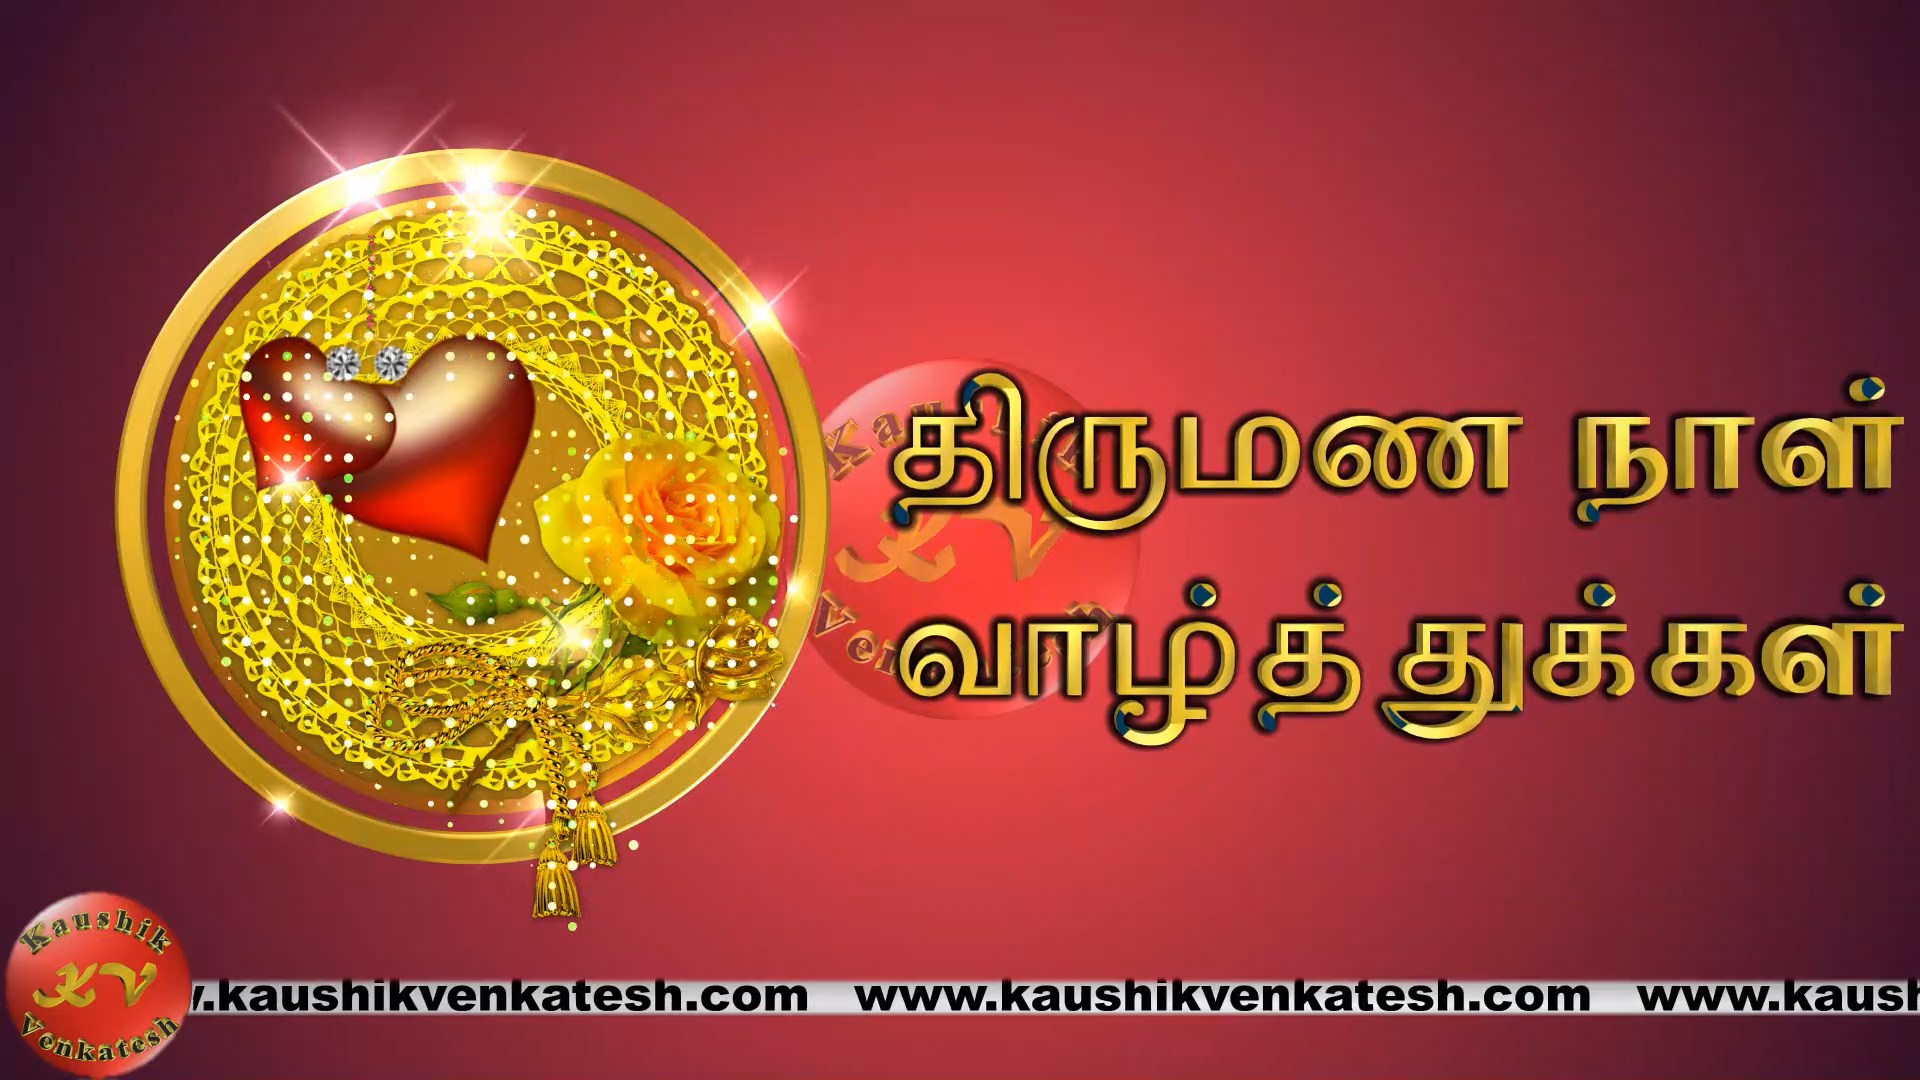 Wedding Anniversary Wishes in Tamil (Video) - Kaushik Venkatesh